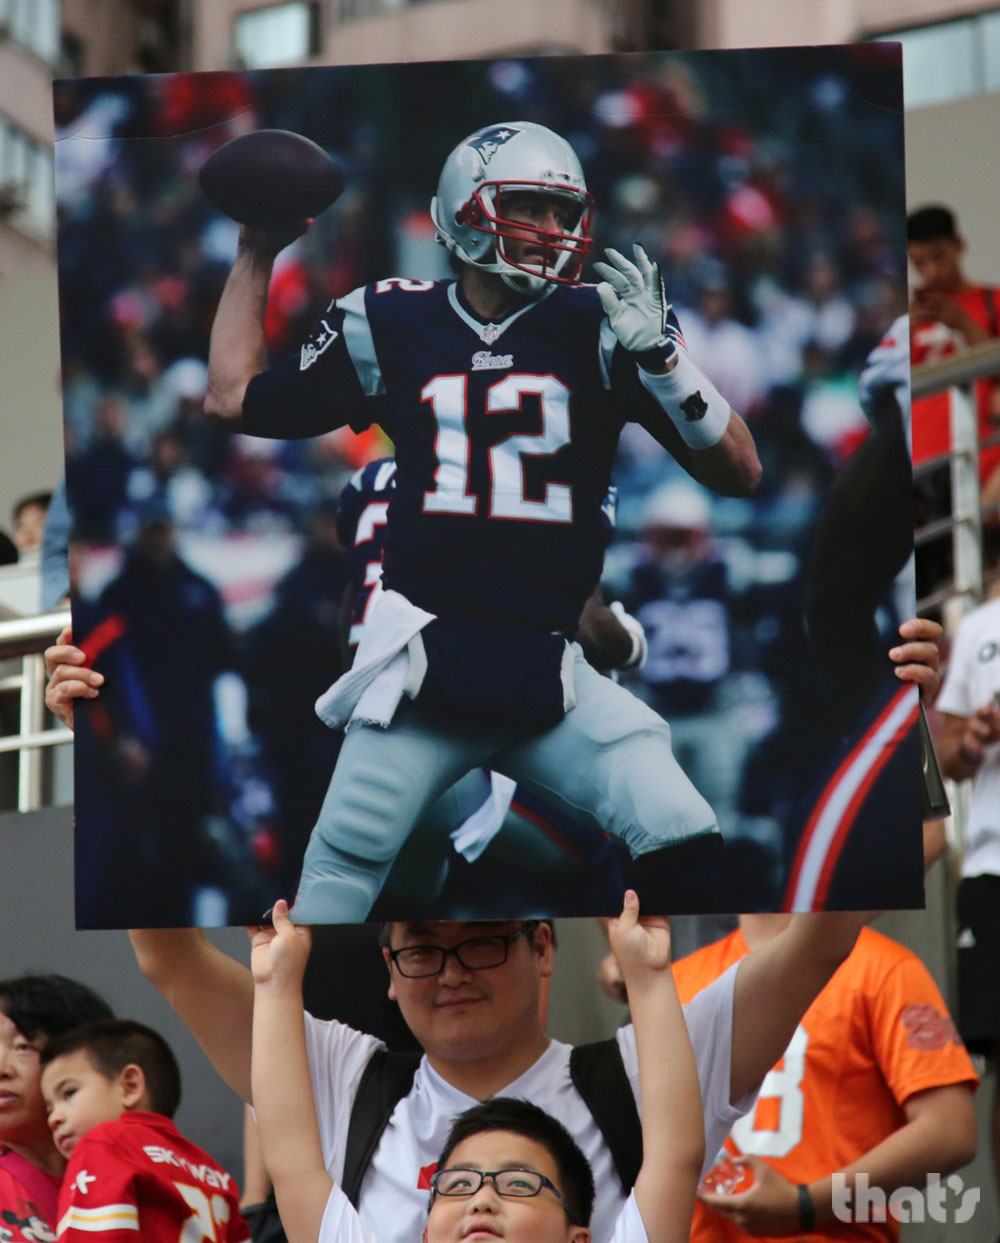 PHOTOS: Tom Brady Visits Shanghai